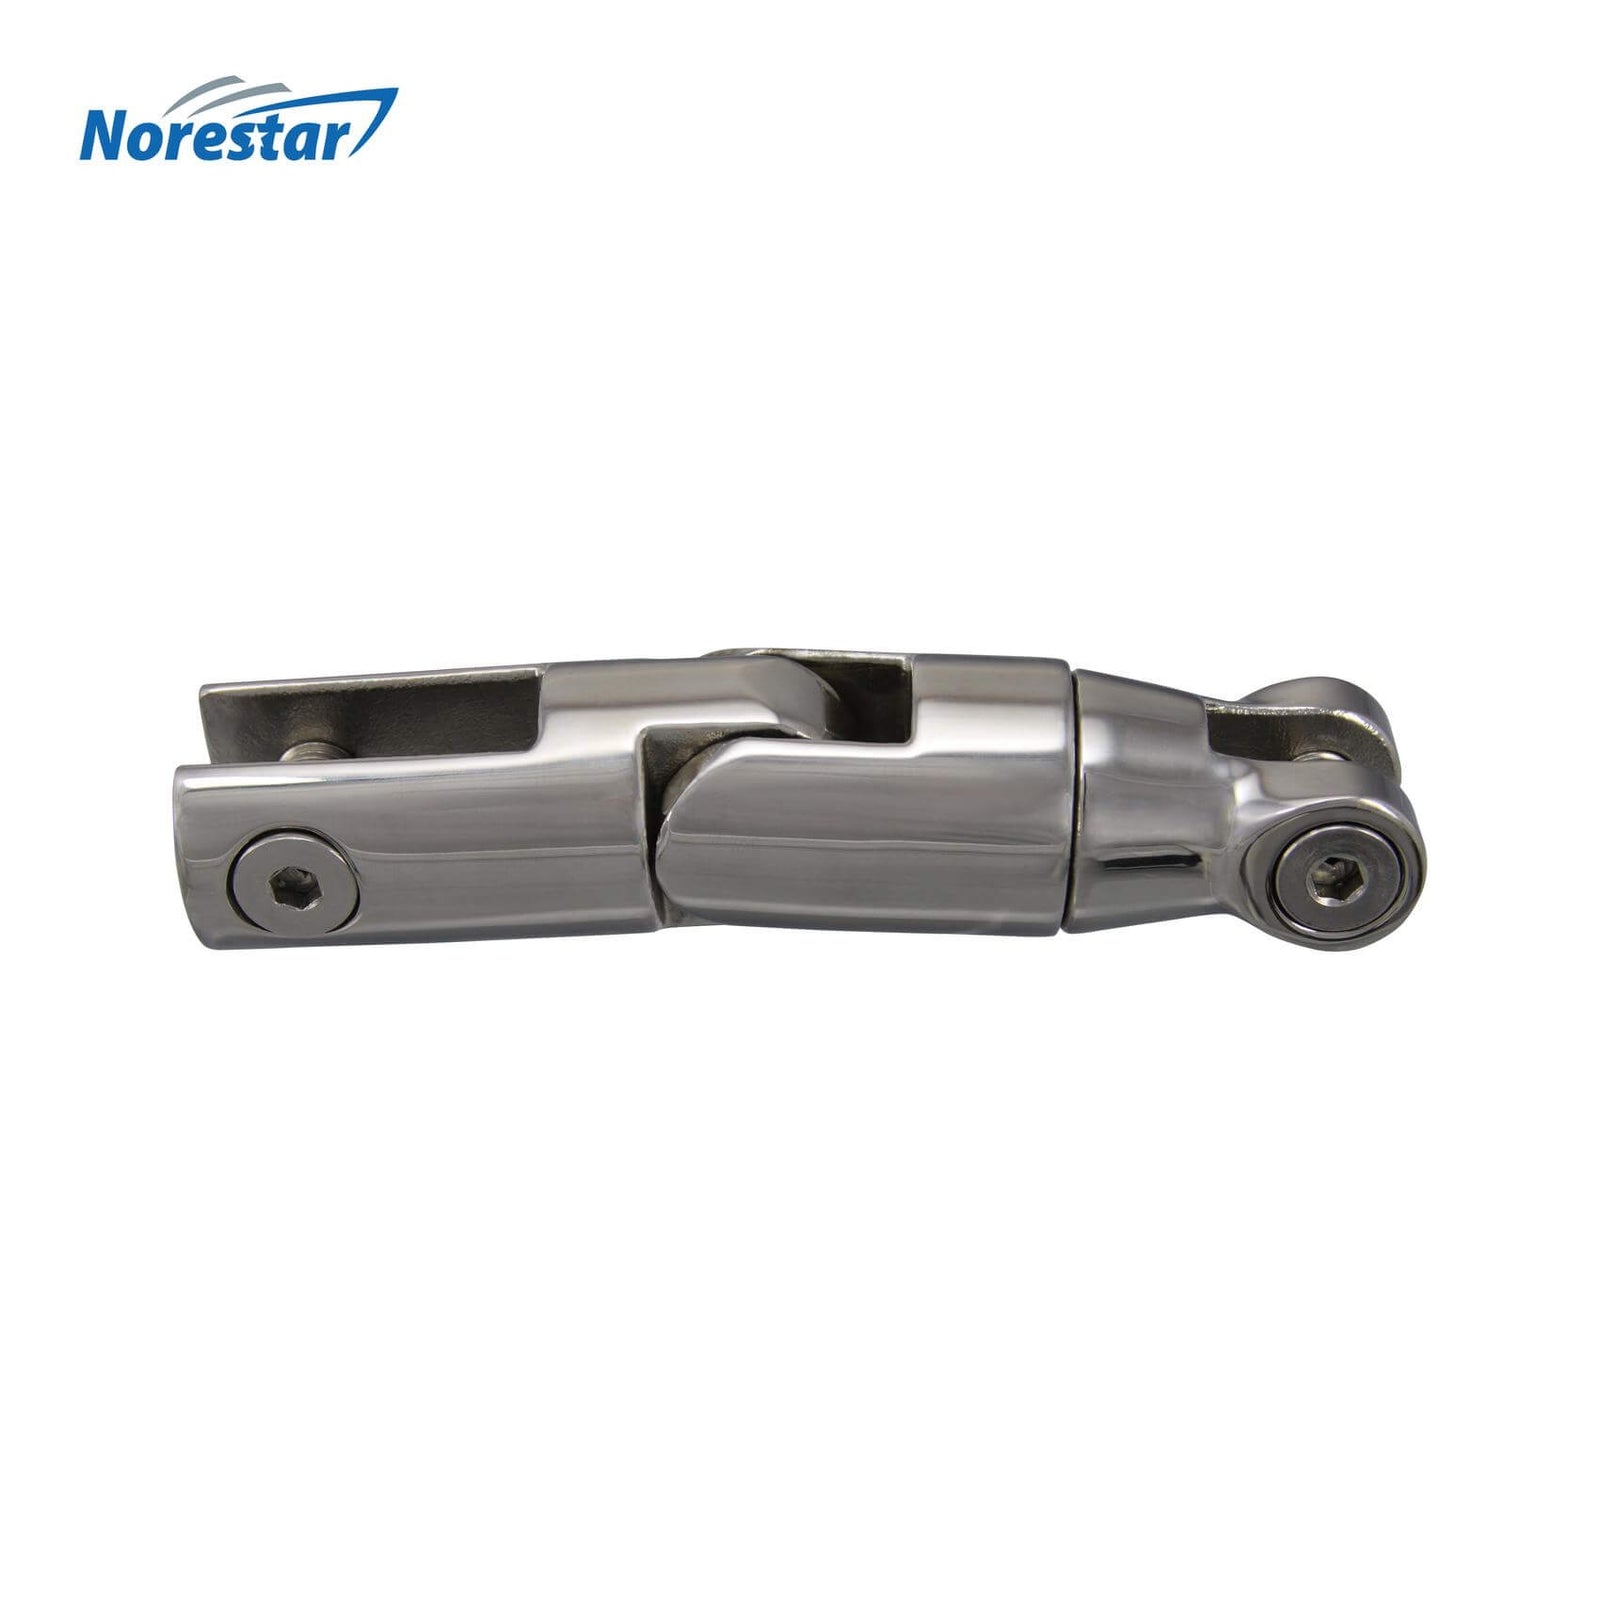 Norestar Stainless Steel Multidirectional Anchor Swivel